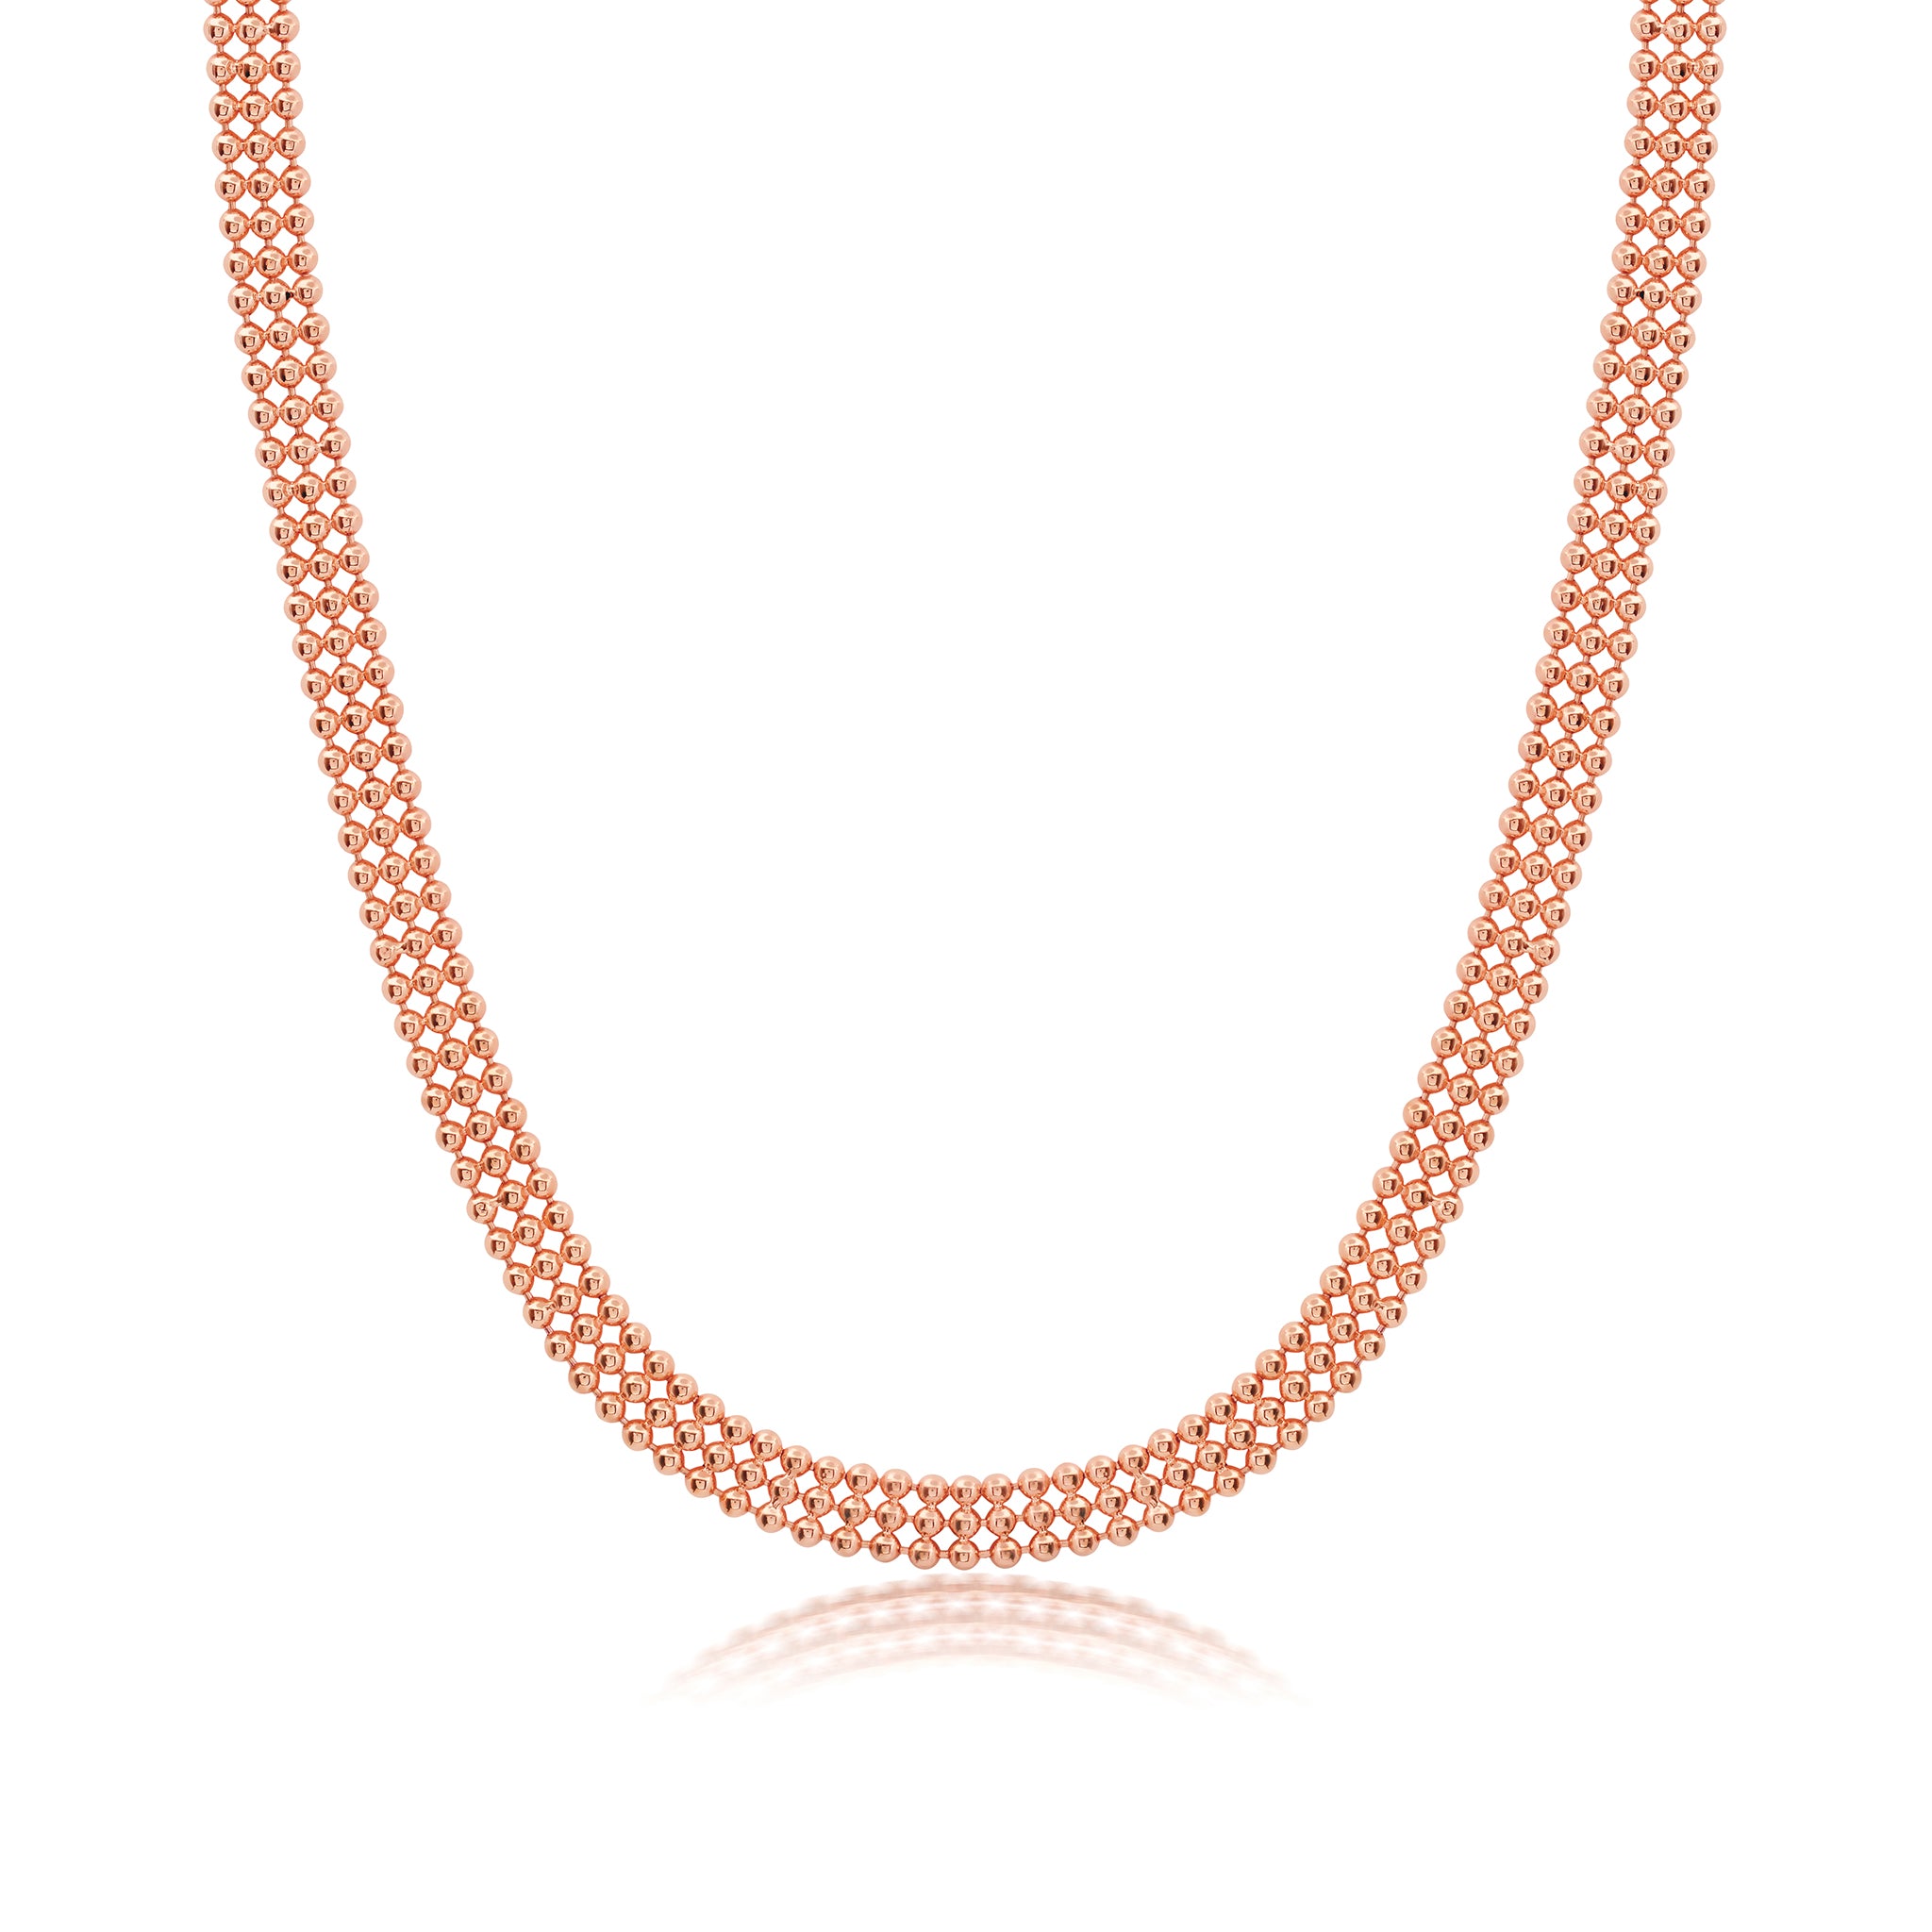 Diamond Clasp 3 Row Necklace